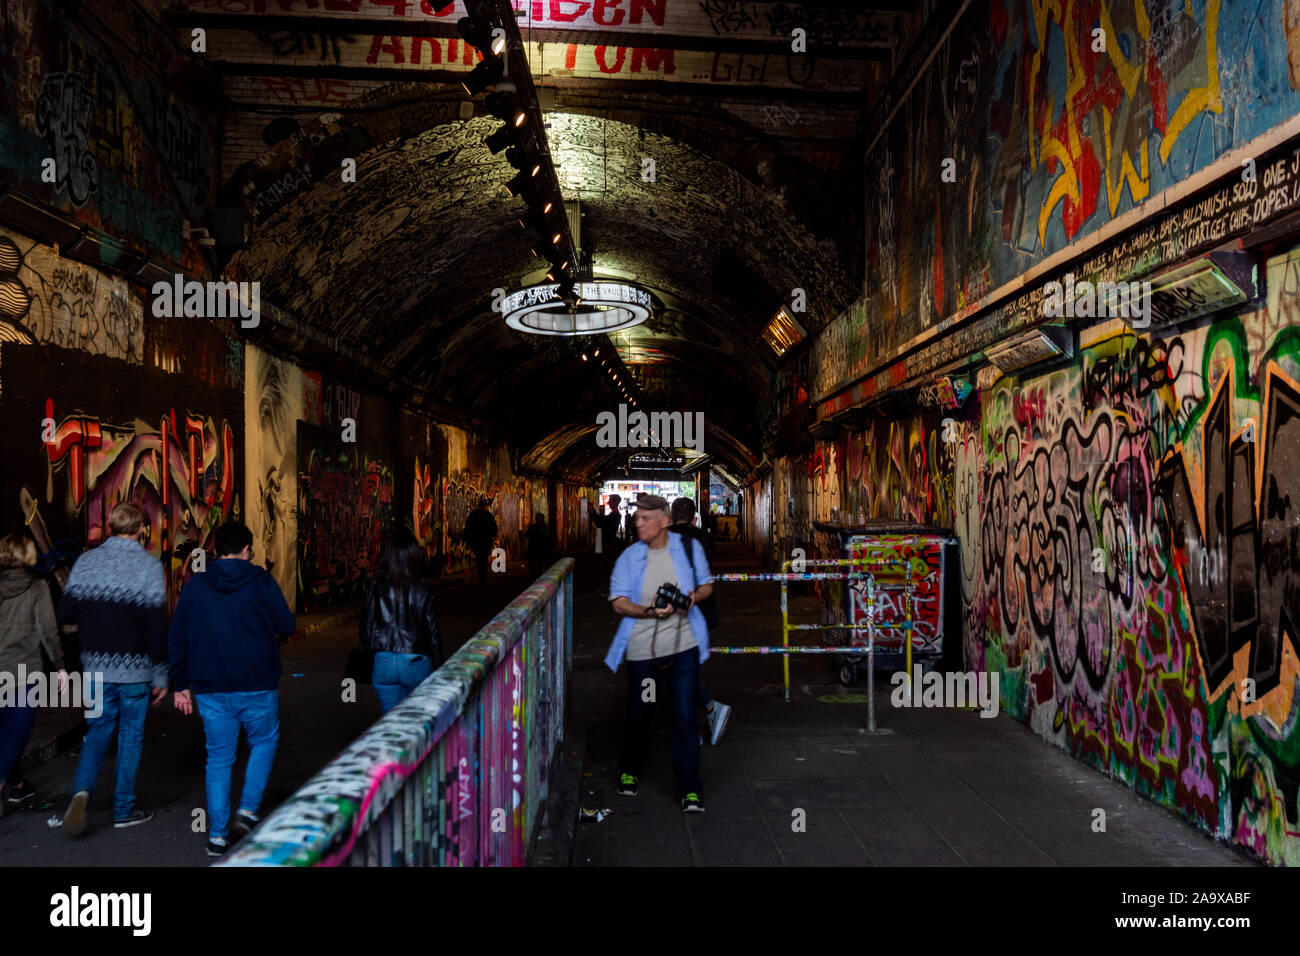 Street art in Leake Street Tunnel, Waterloo, London Stock Photo